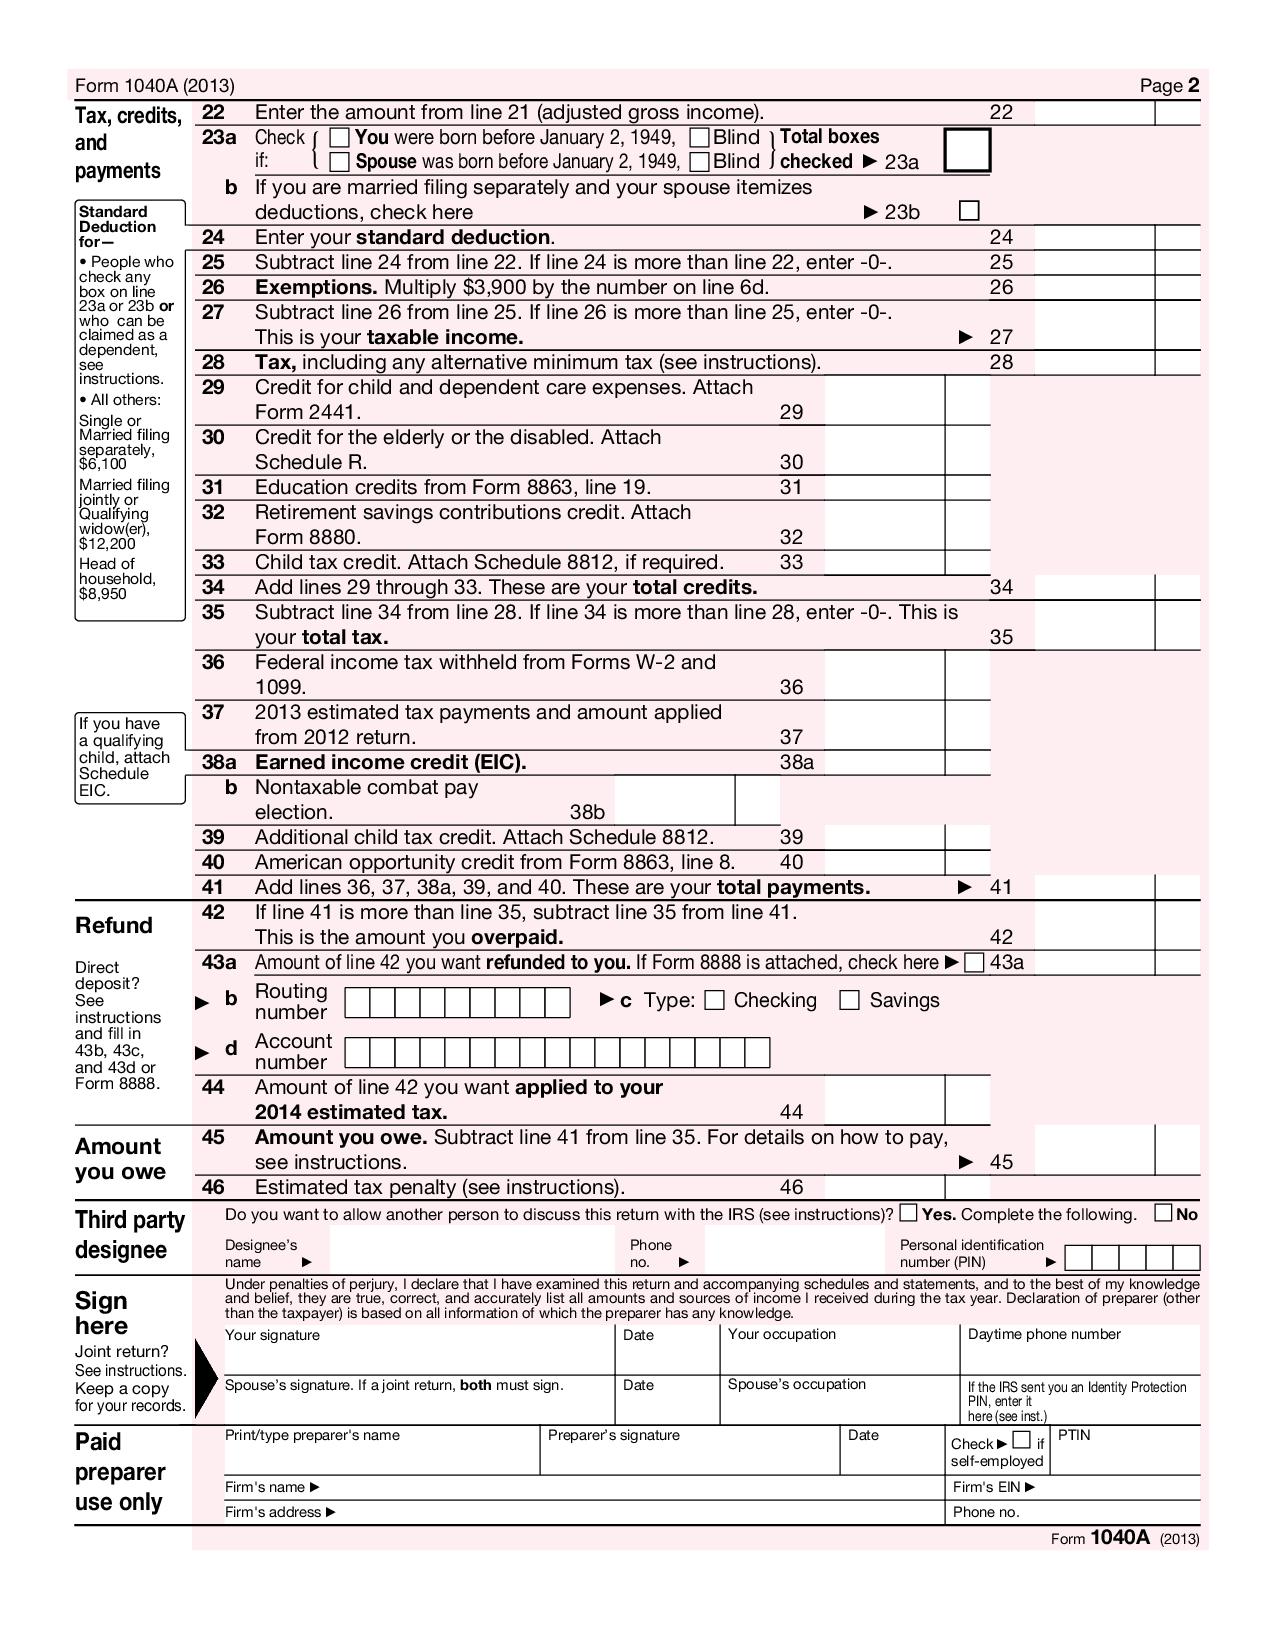 1040A U.S. Individual Tax Return